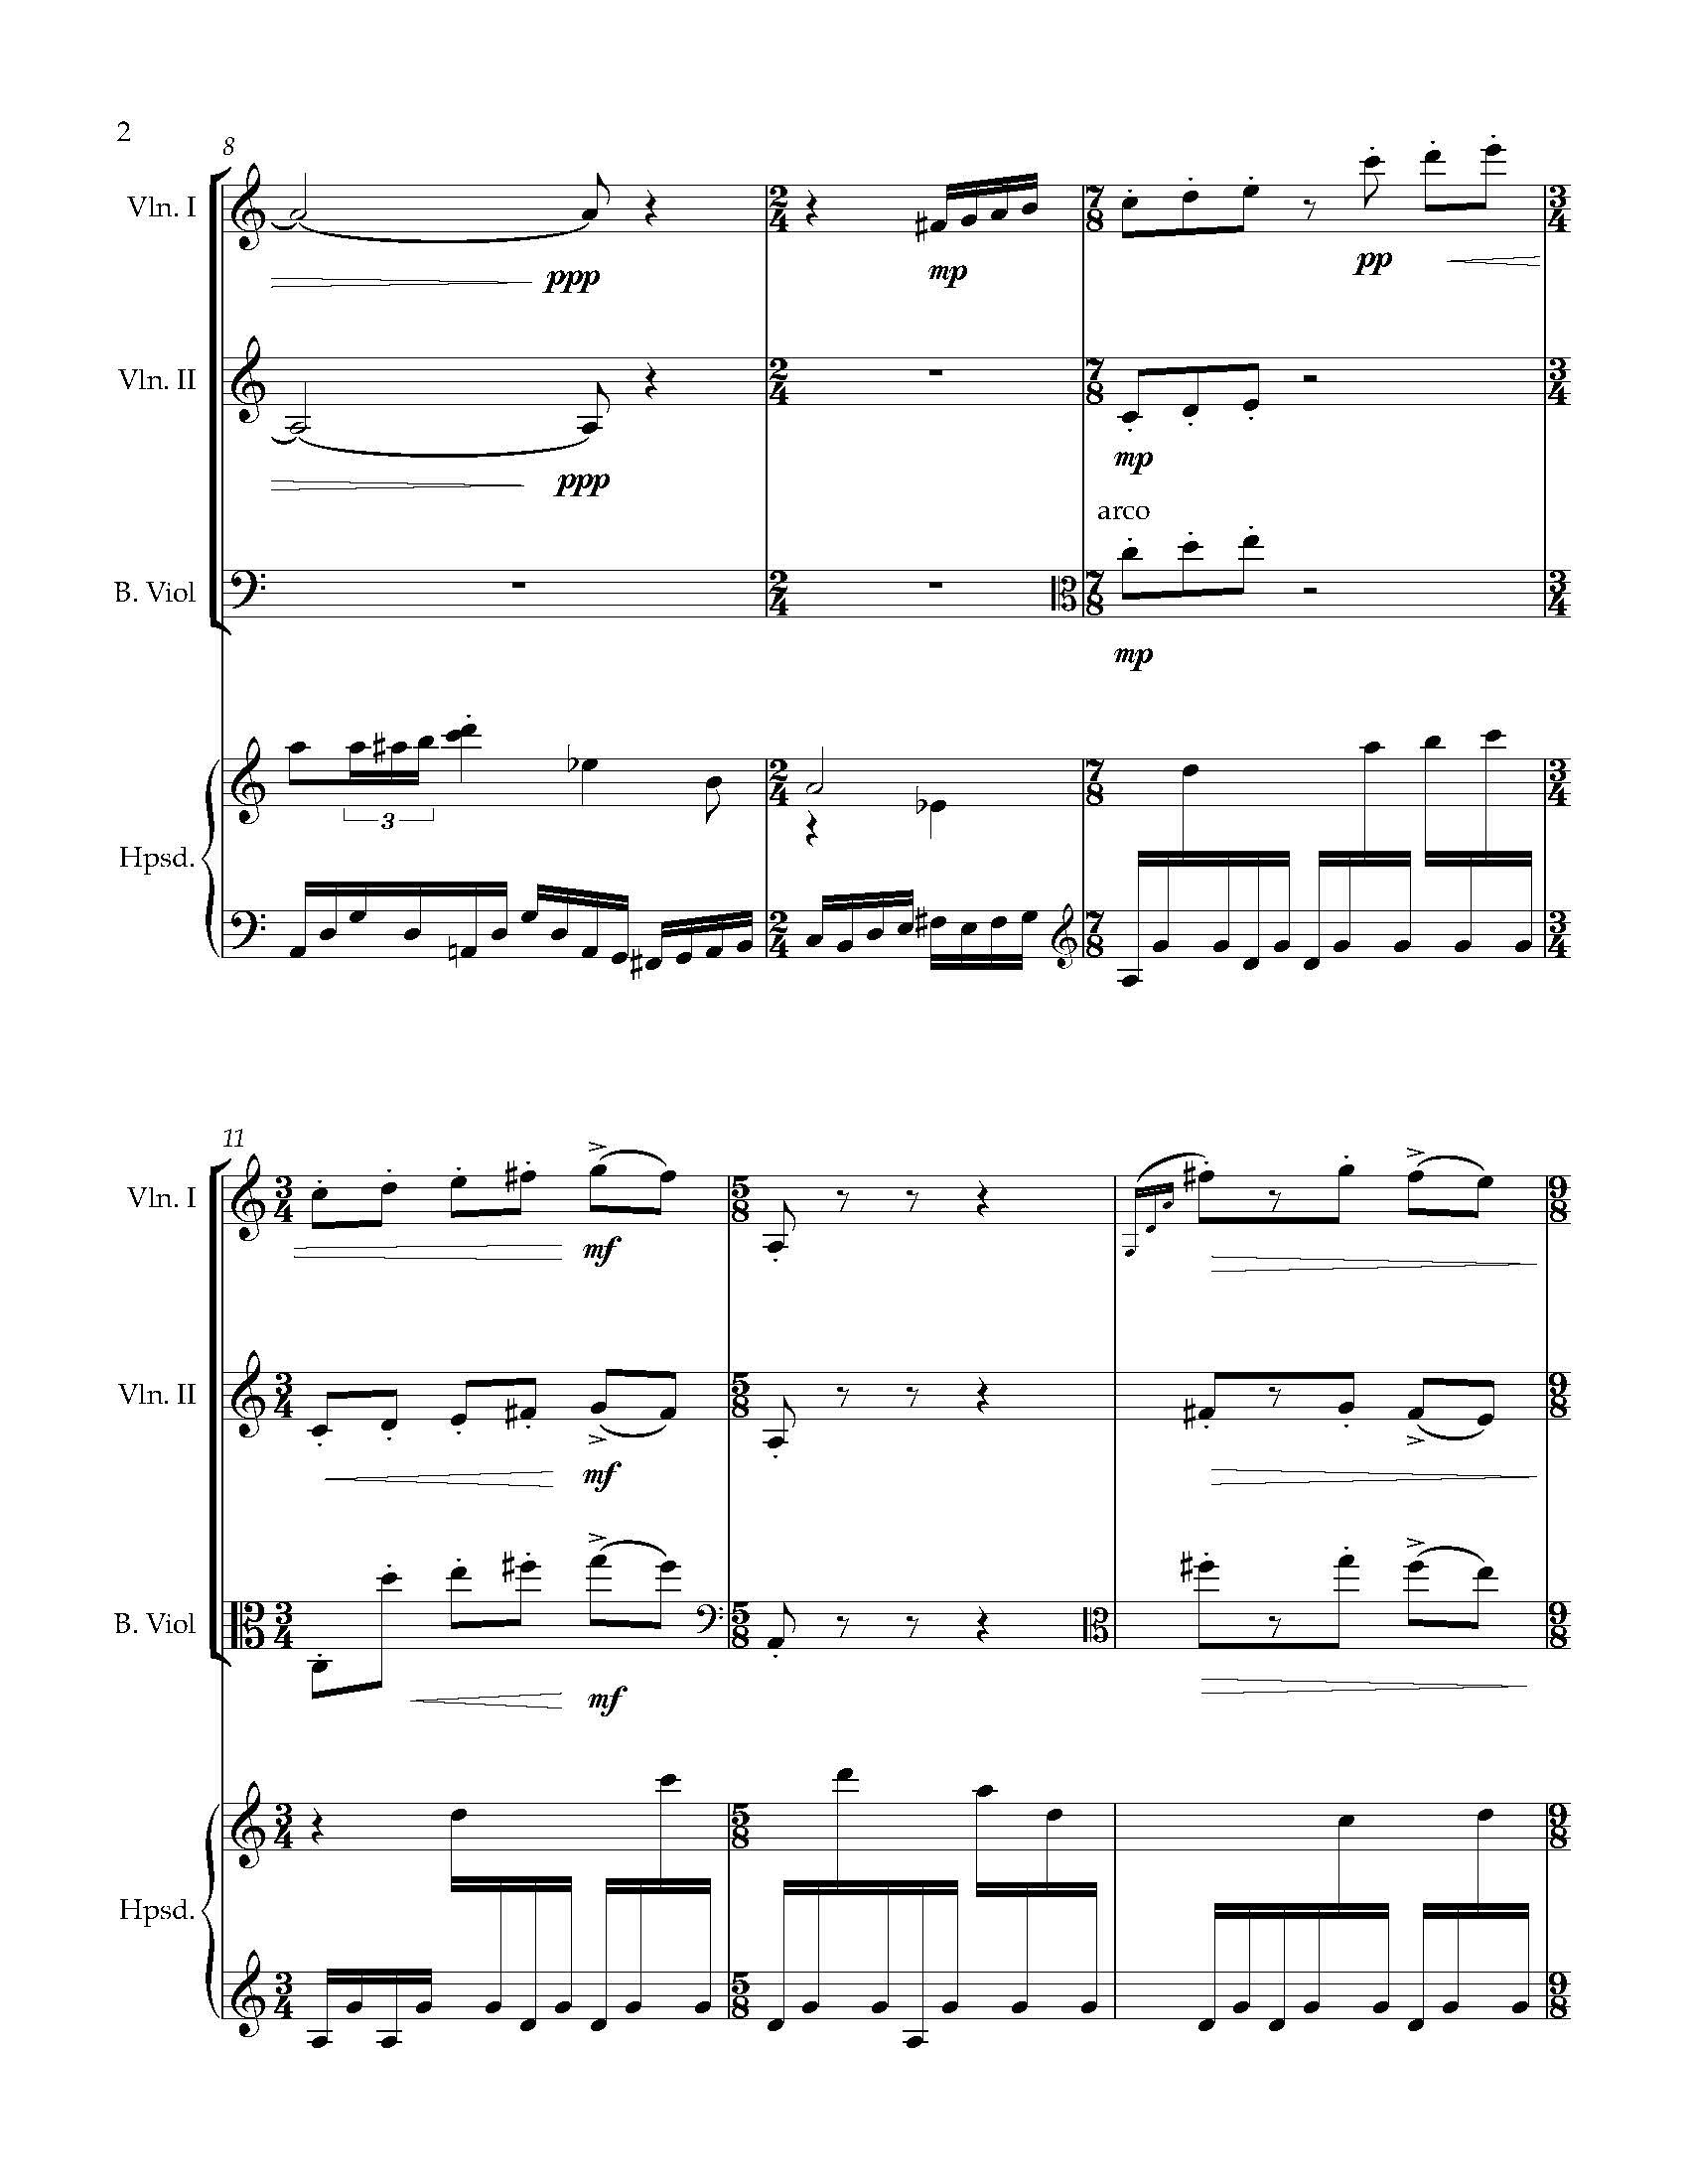 Sonata Sonare - Complete Score_Page_08.jpg